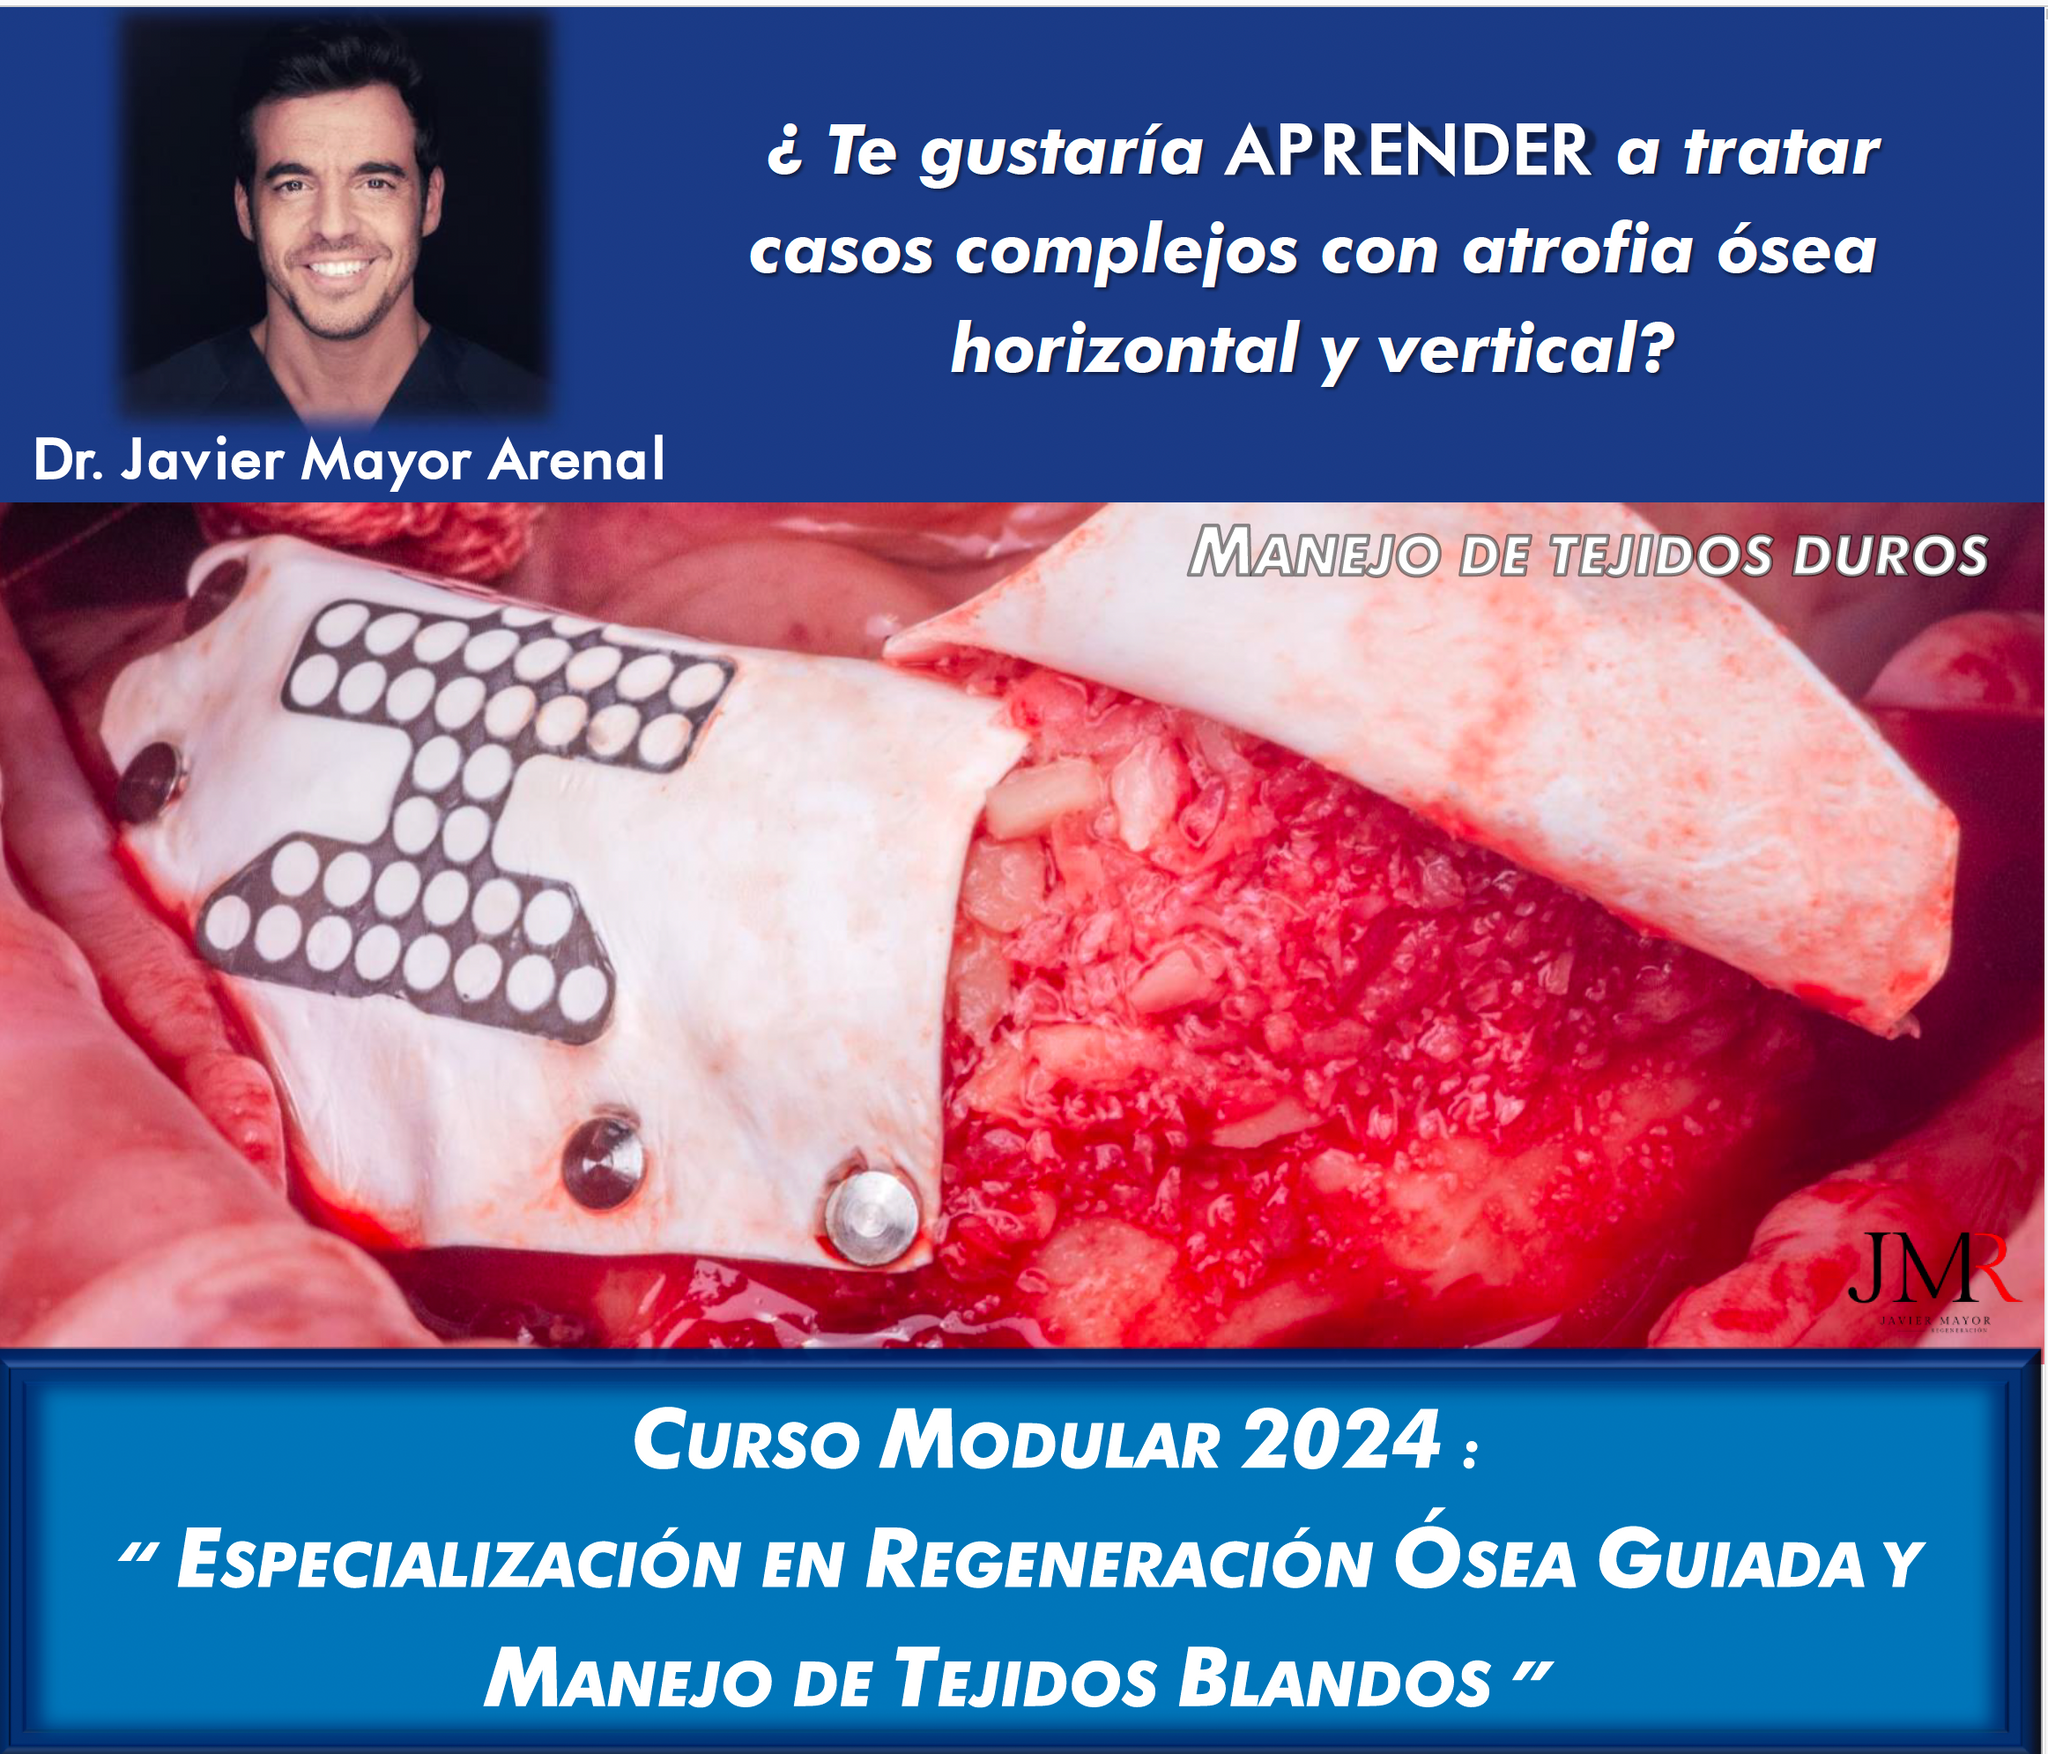 Curso modular 2024 de 'Especialización en Regeneración Ósea Guiada y Manejo de Tejidos Blandos'